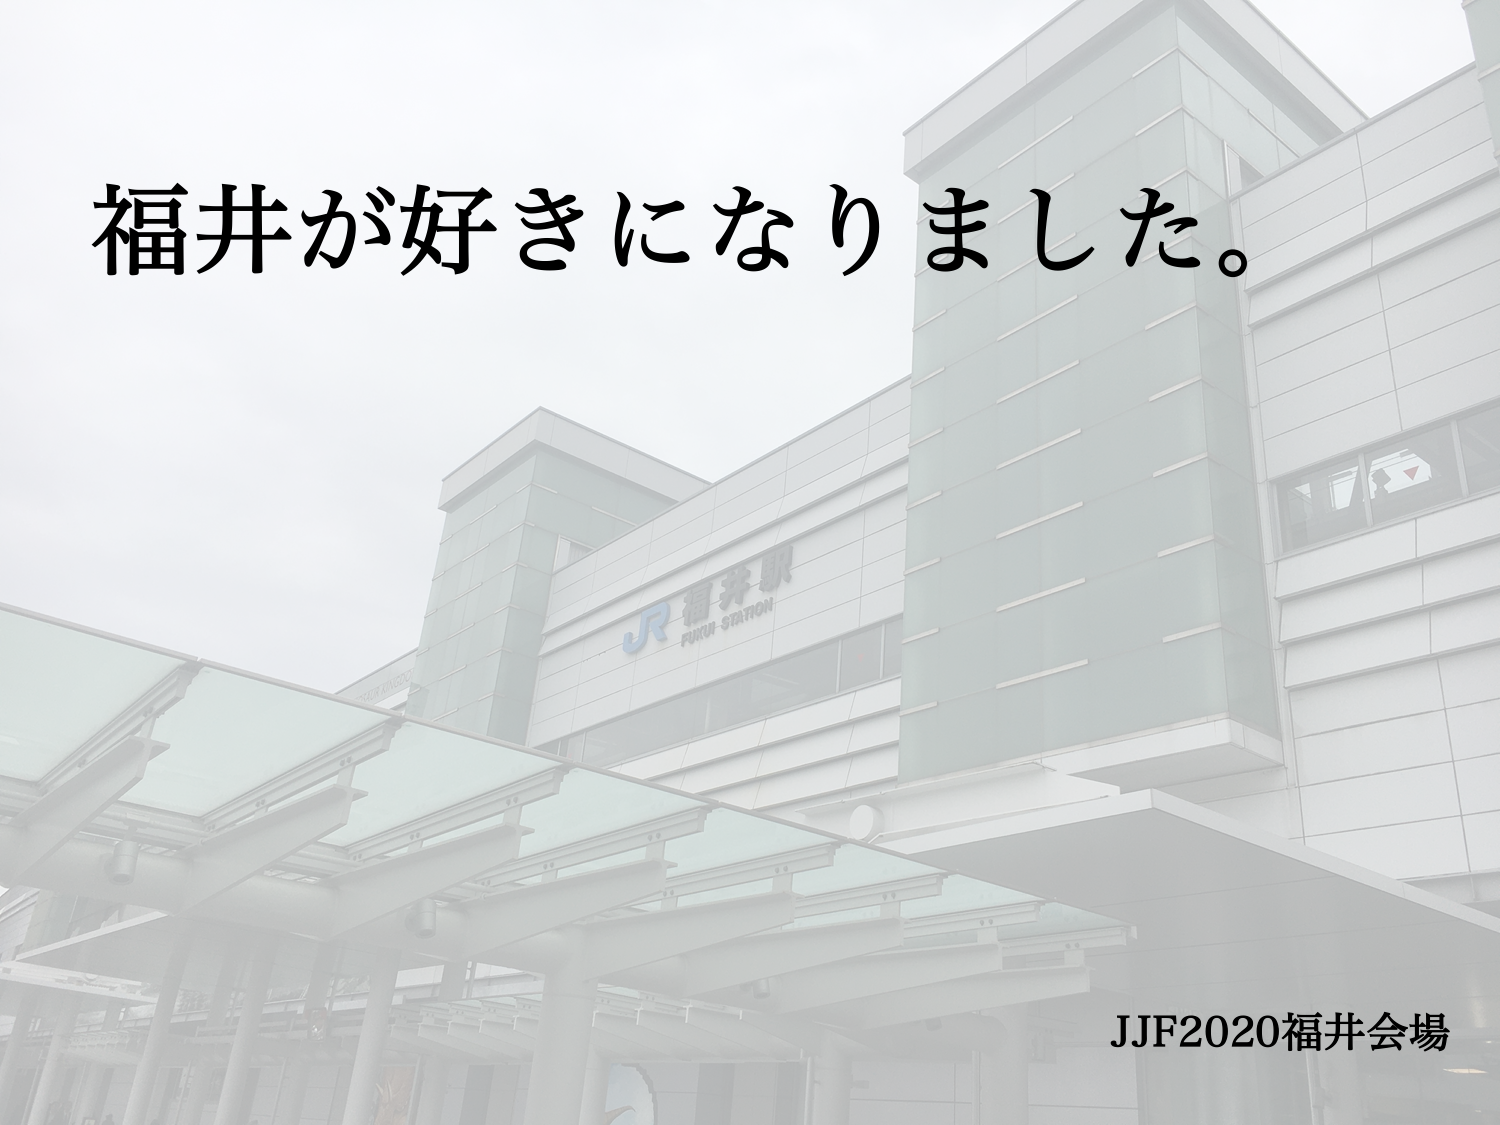 JJF2020福井会場スタッフからのメッセージ